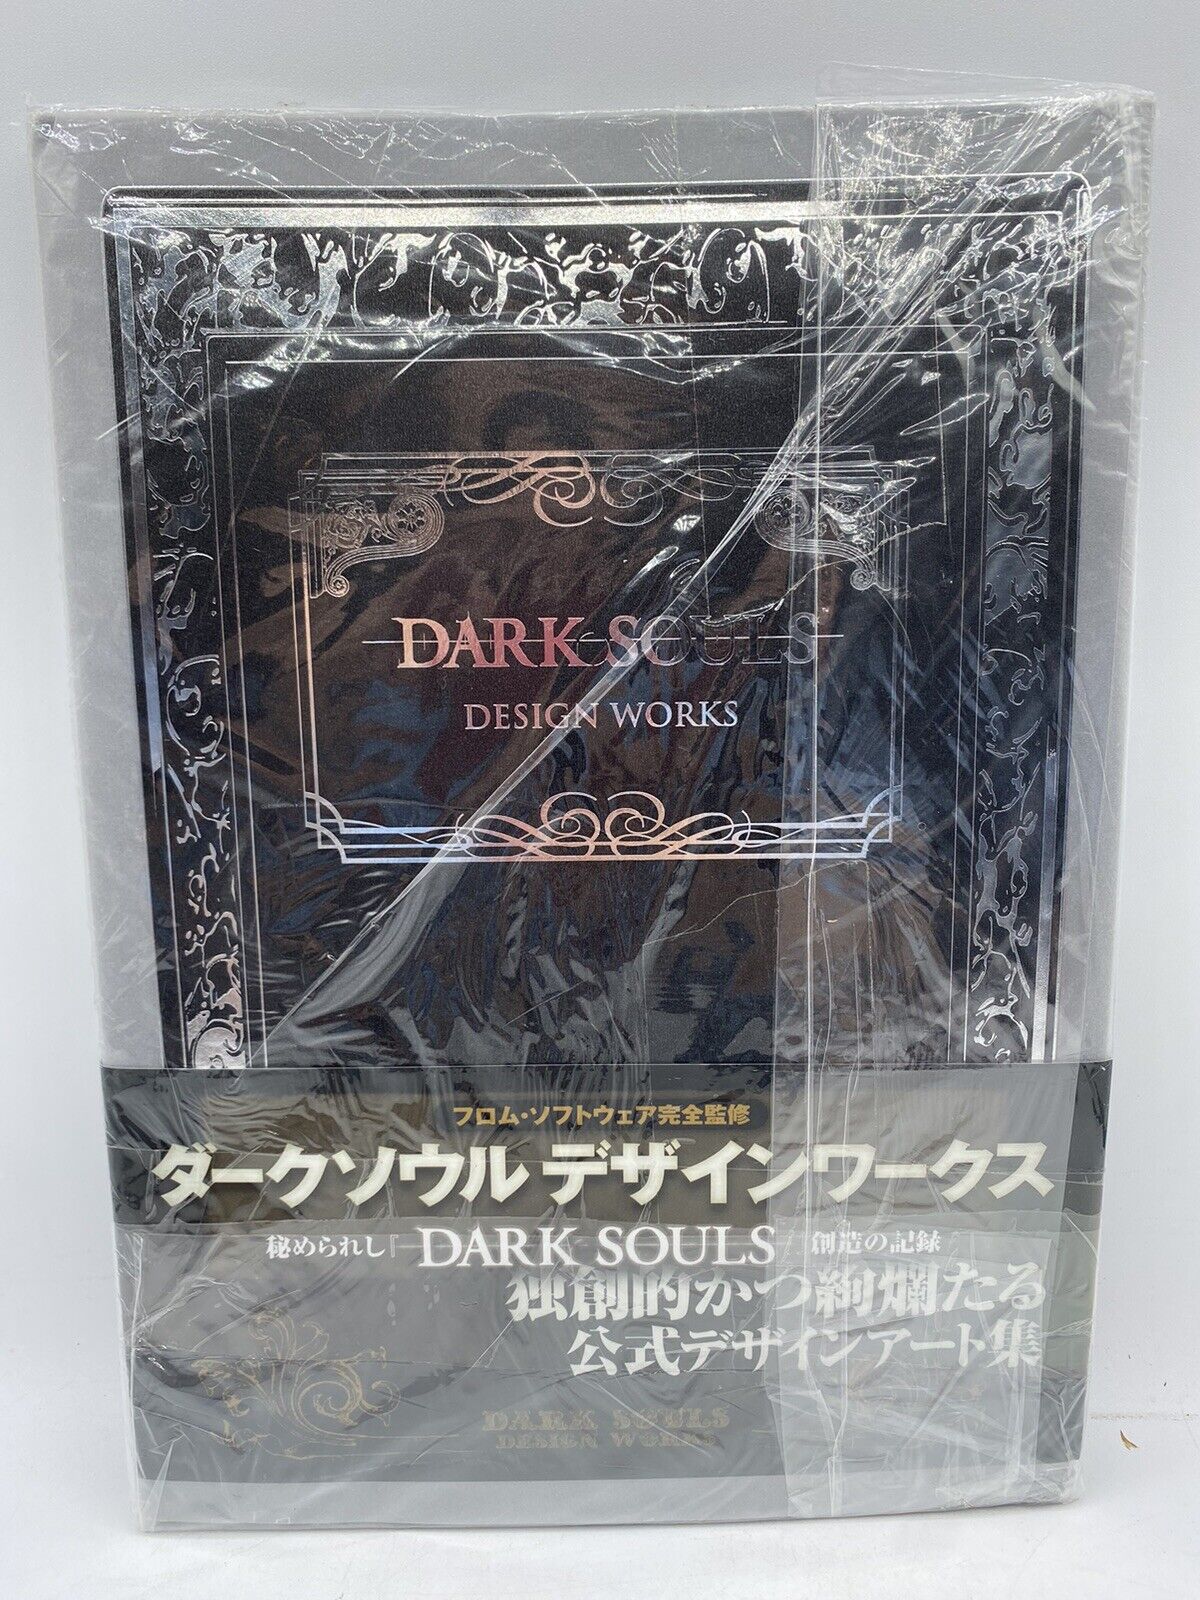 Dark Souls: Design Works, Hardcover Art Book, Japanese, See Details